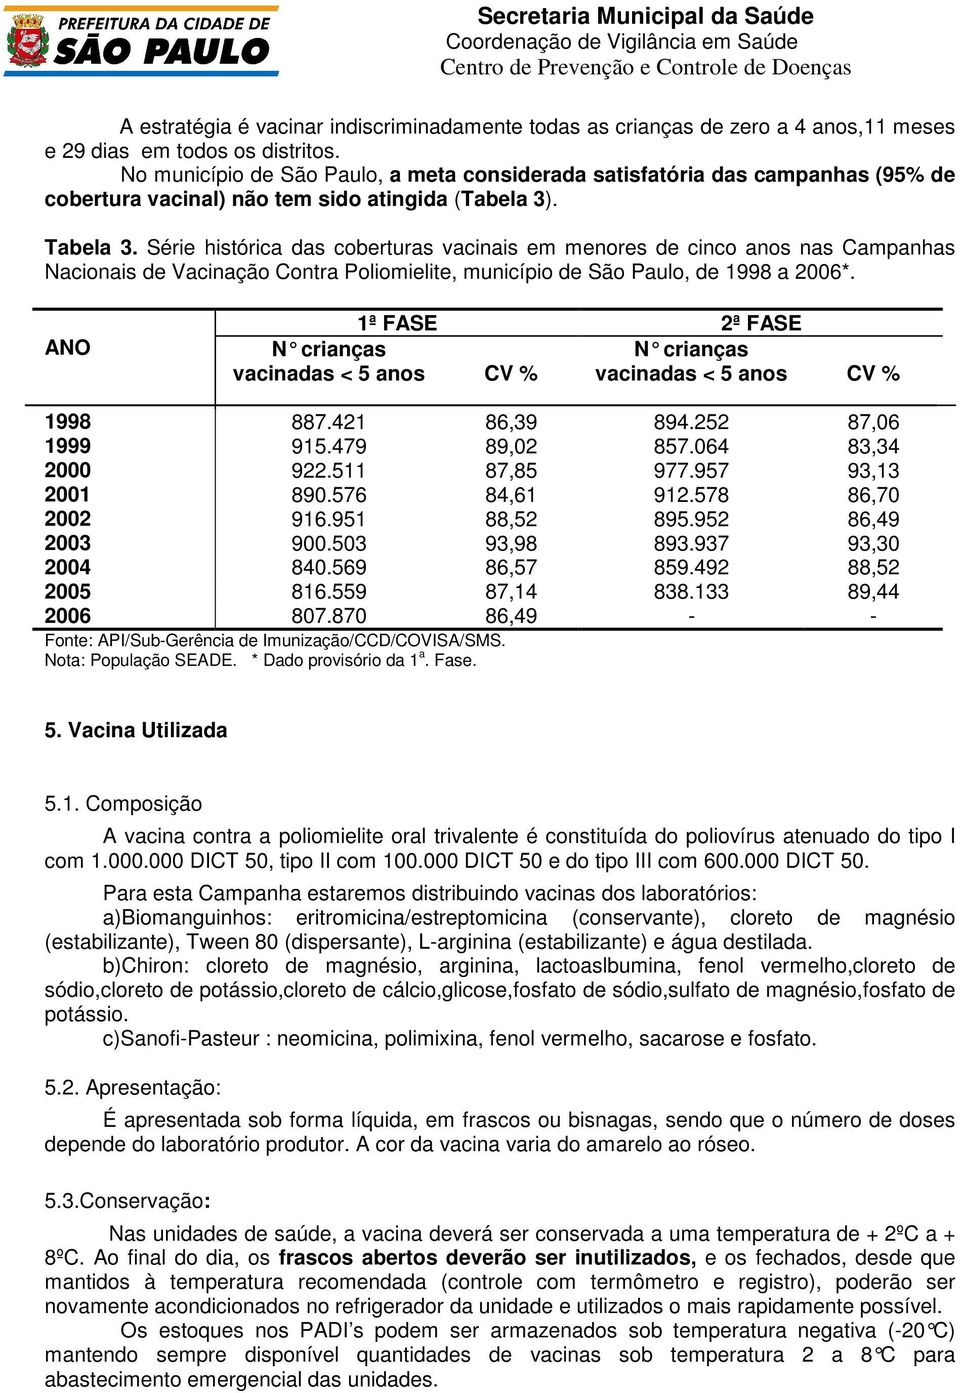 Série histórica das coberturas vacinais em menores de cinco anos nas Campanhas Nacionais de Vacinação Contra Poliomielite, município de São Paulo, de 1998 a 2006*.